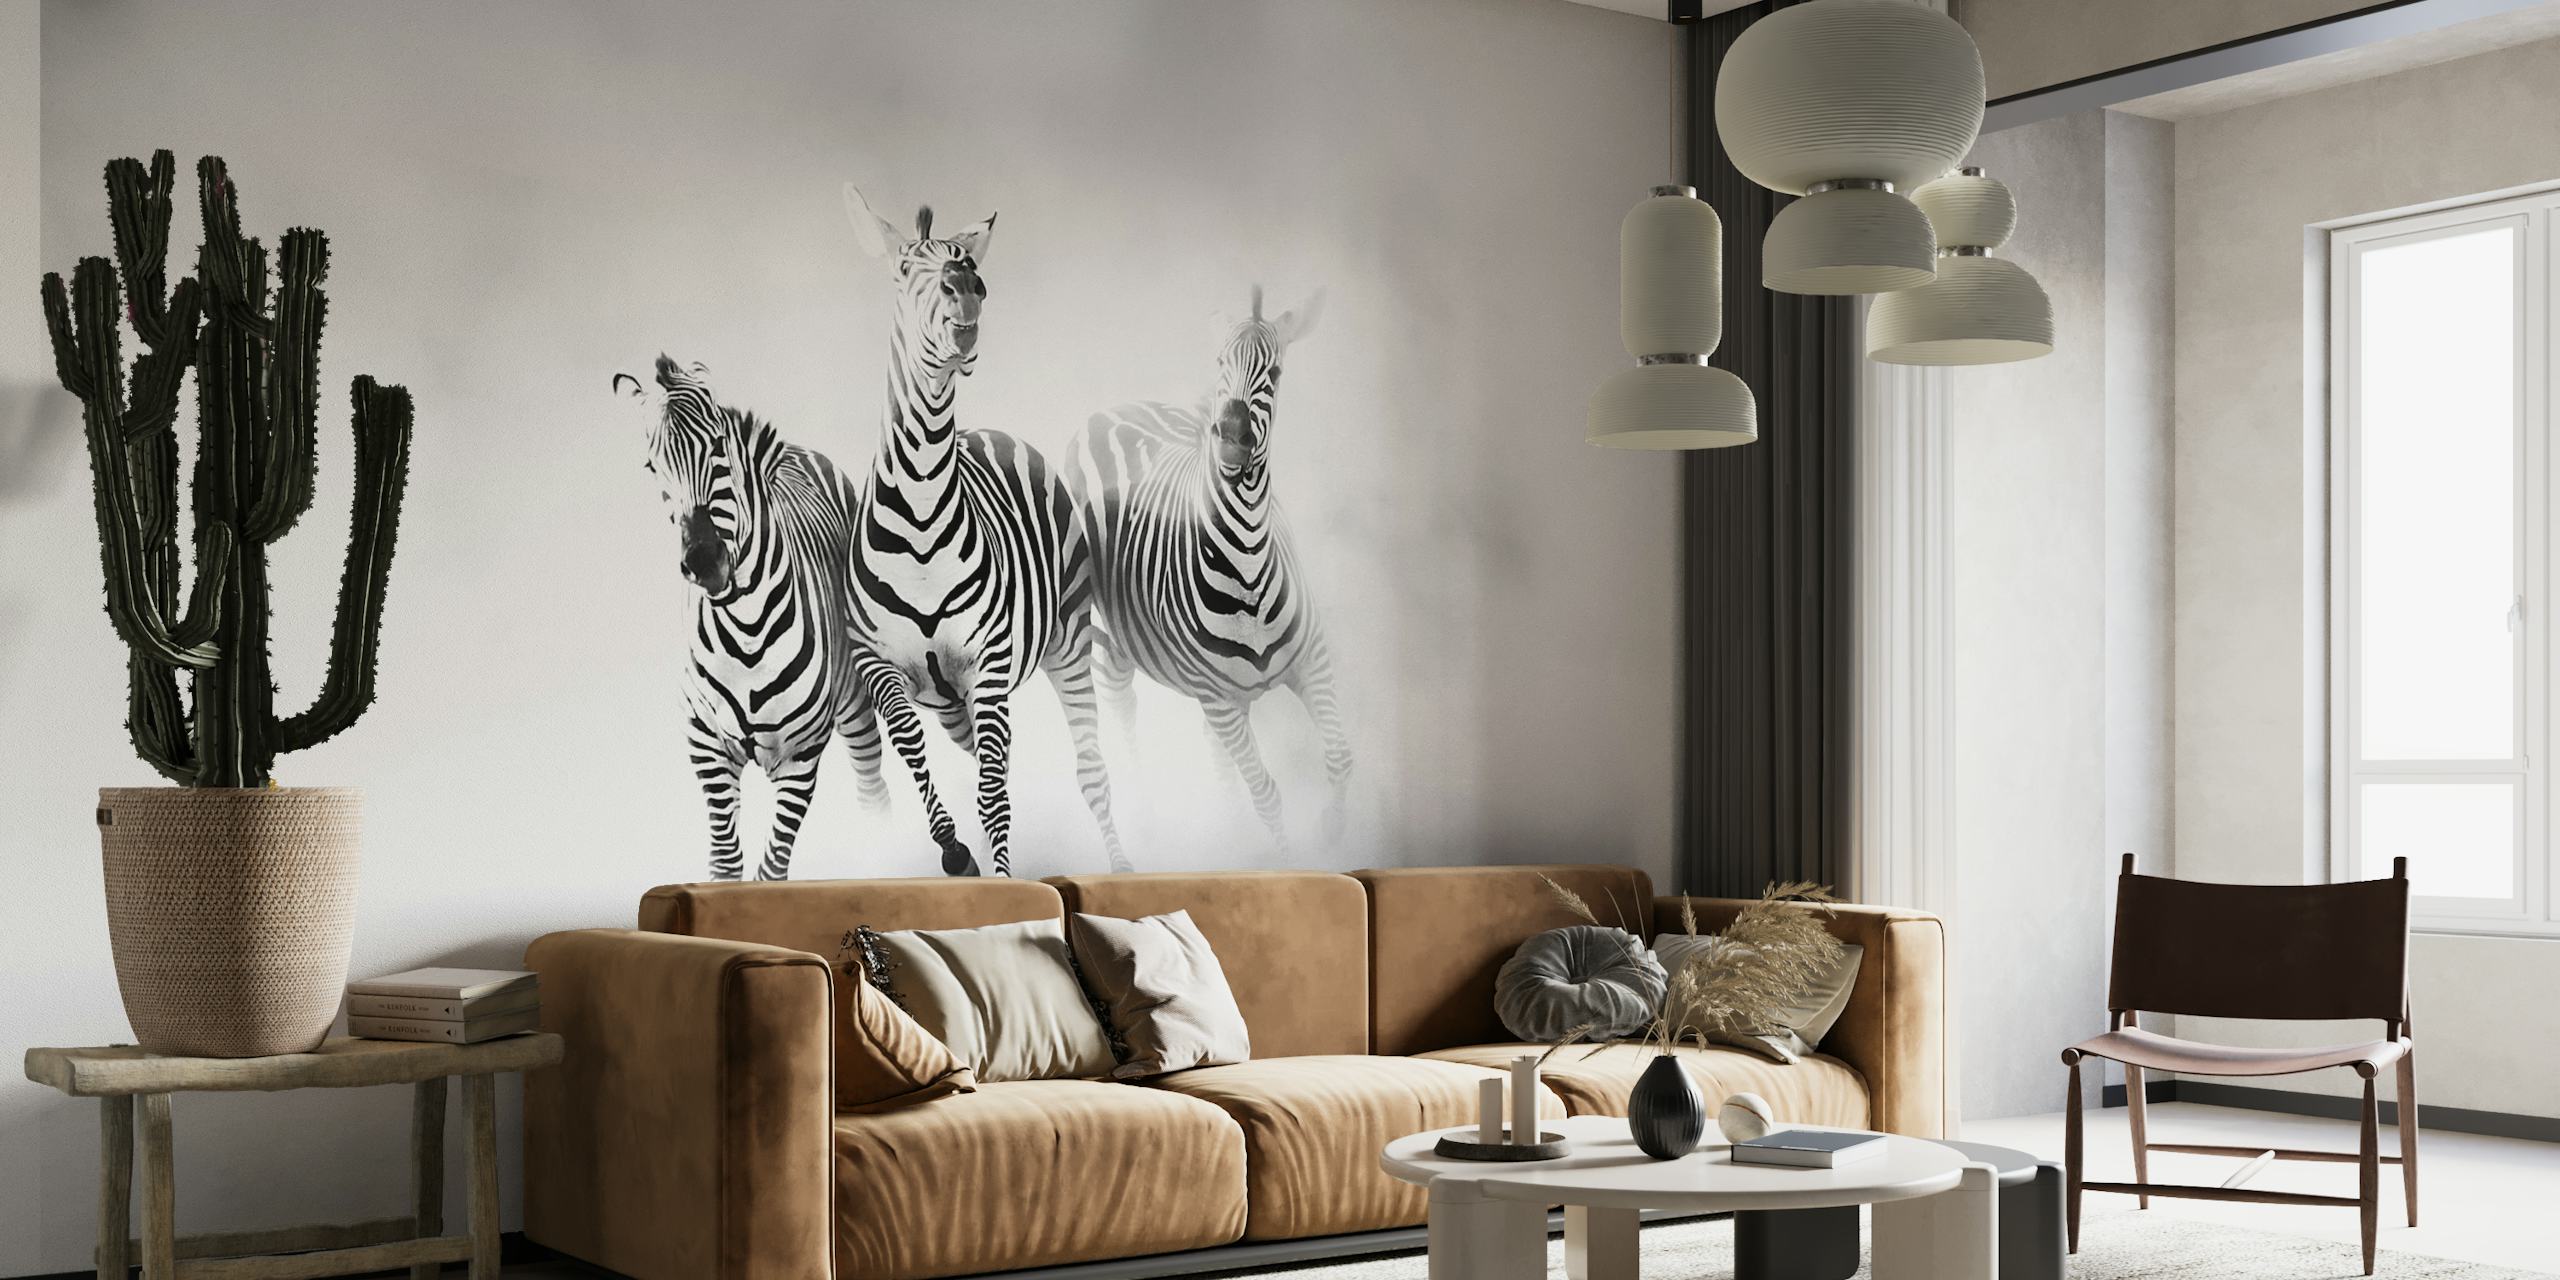 Svart och vit tapet av zebror i rörelse